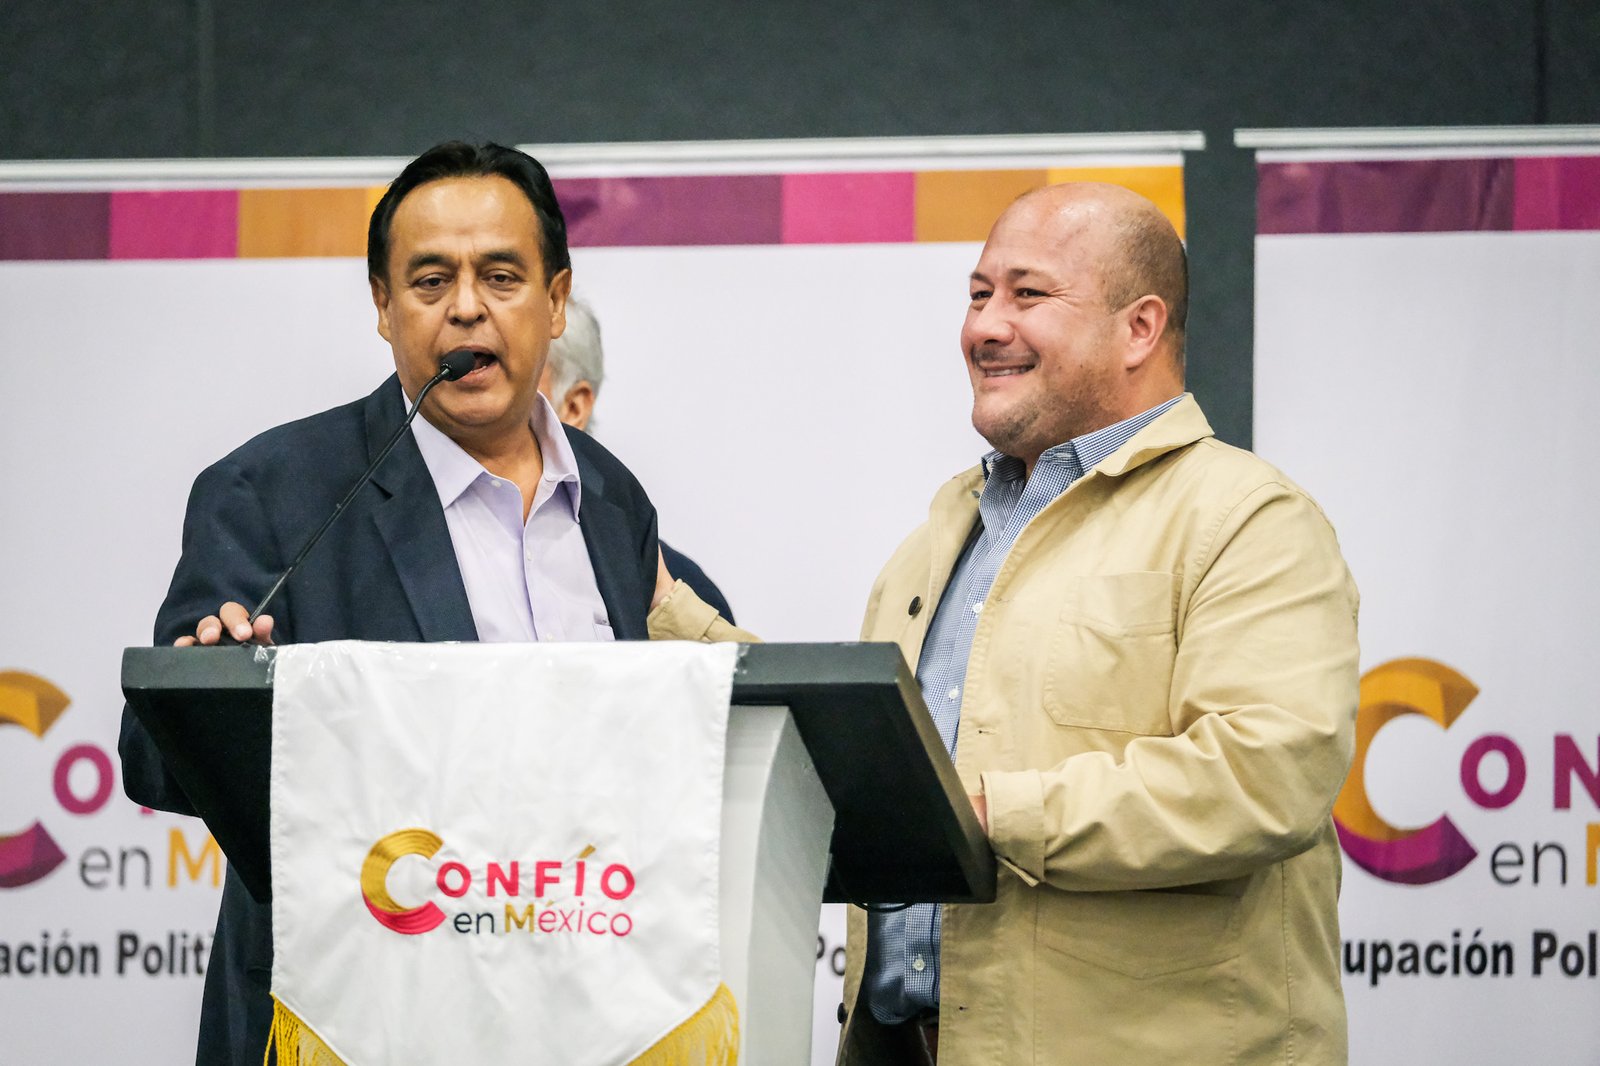 <strong>“En Jalisco se va a definir en muchos sentidos el futuro del país”: Enrique Alfaro</strong>